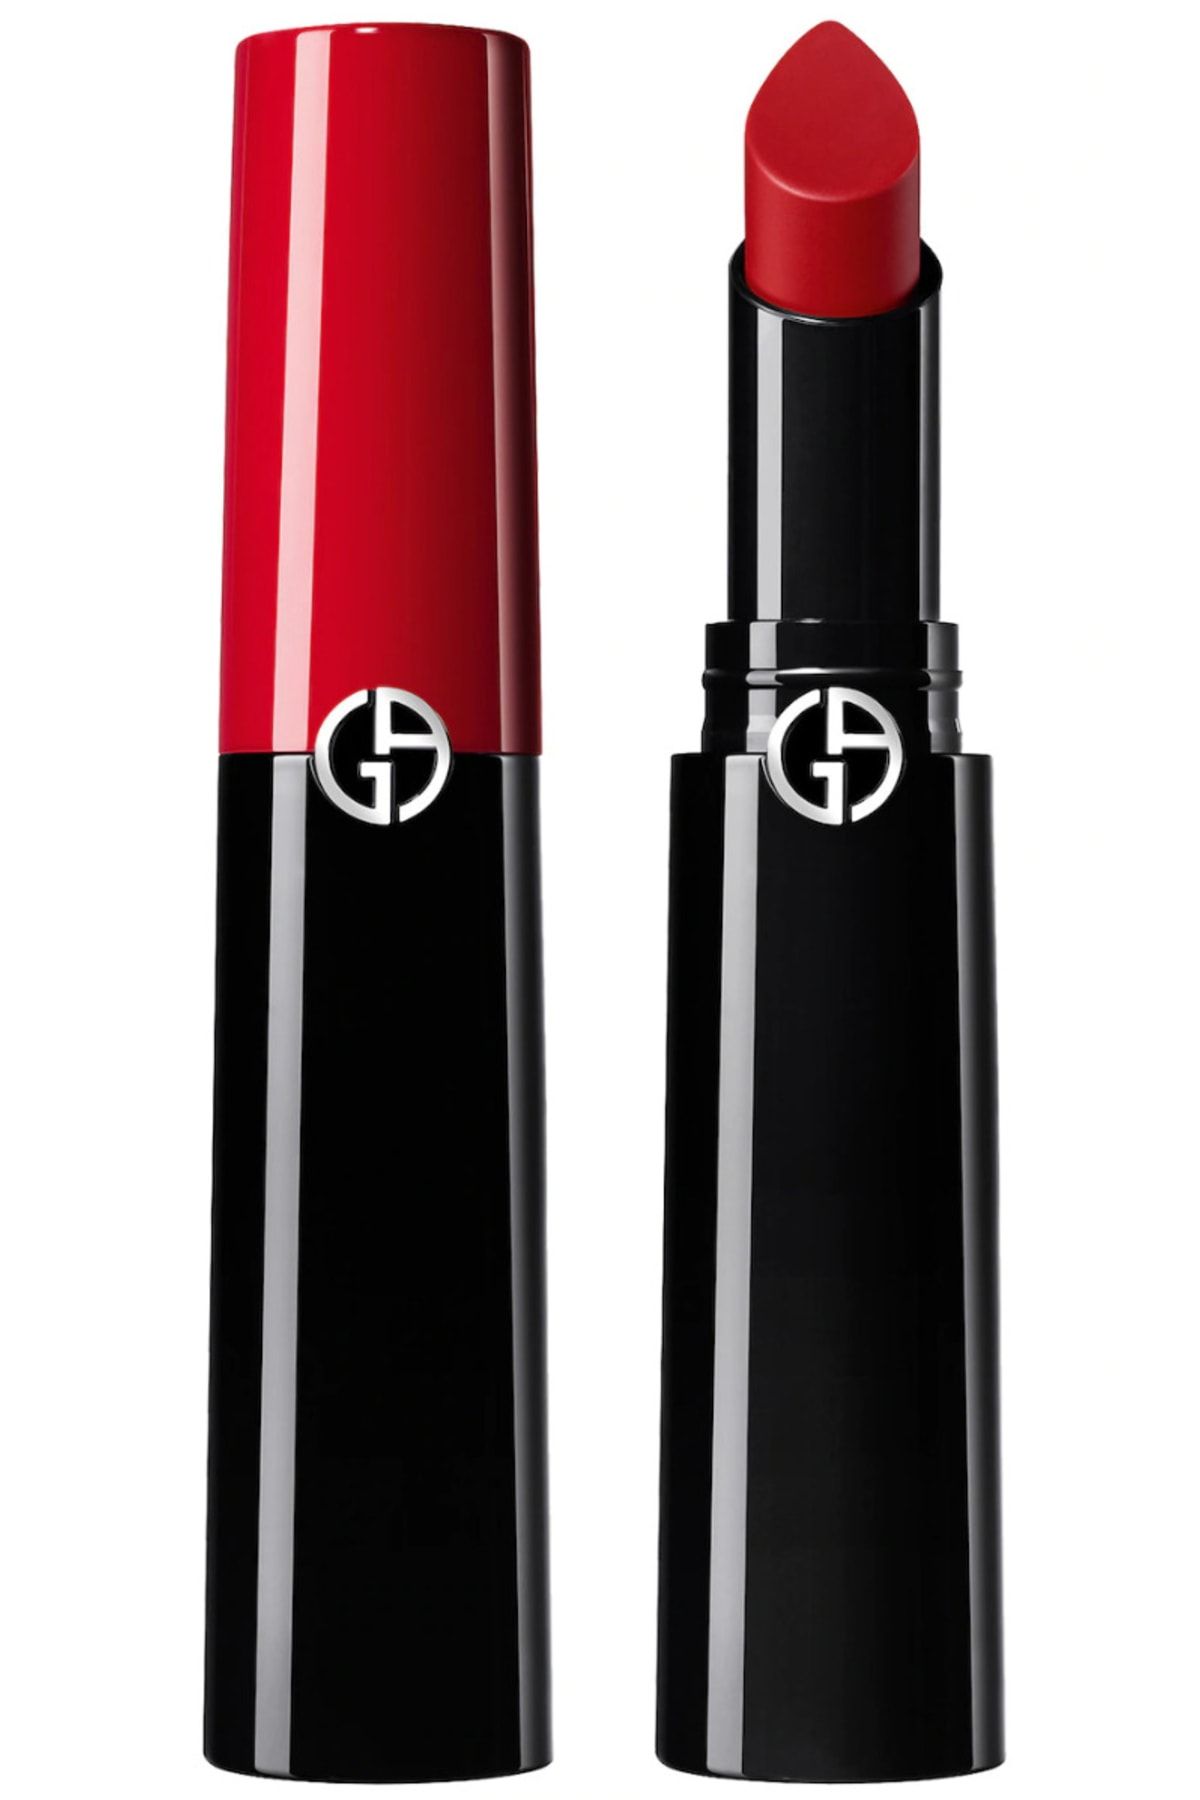 Giorgio Armani Lip Power Long Lasting Satin Lipstick